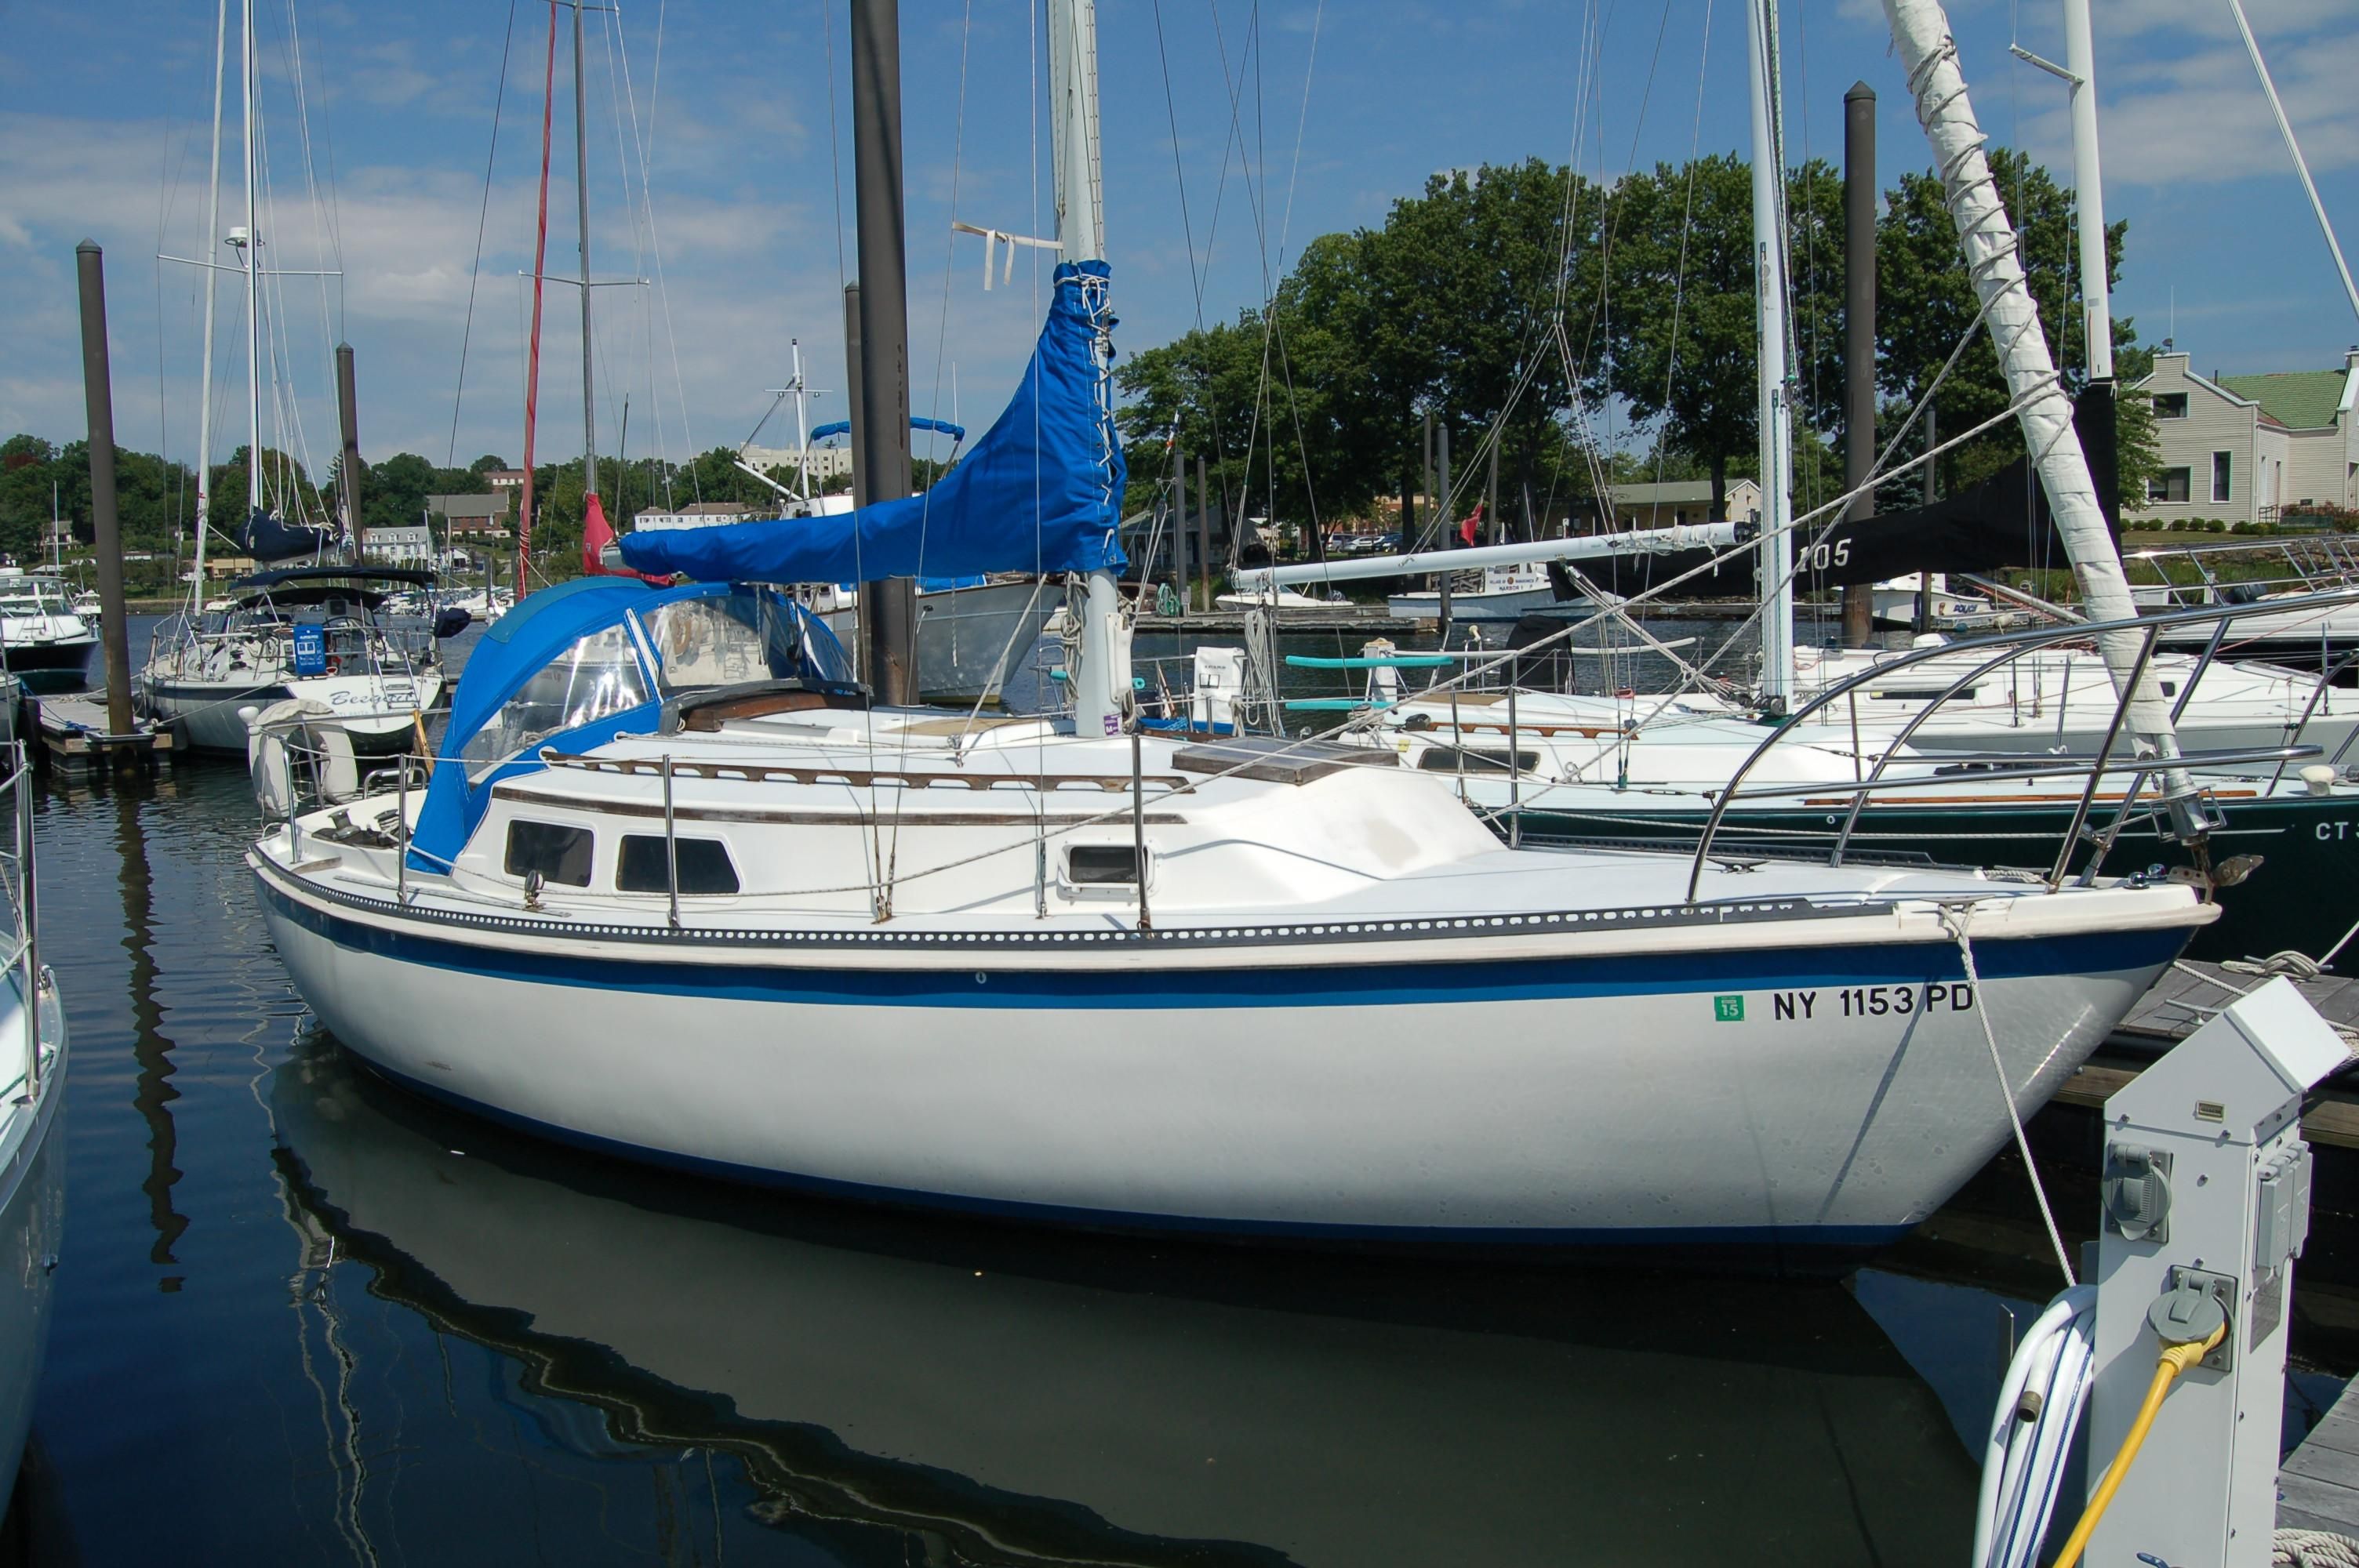 30' newport sailboat